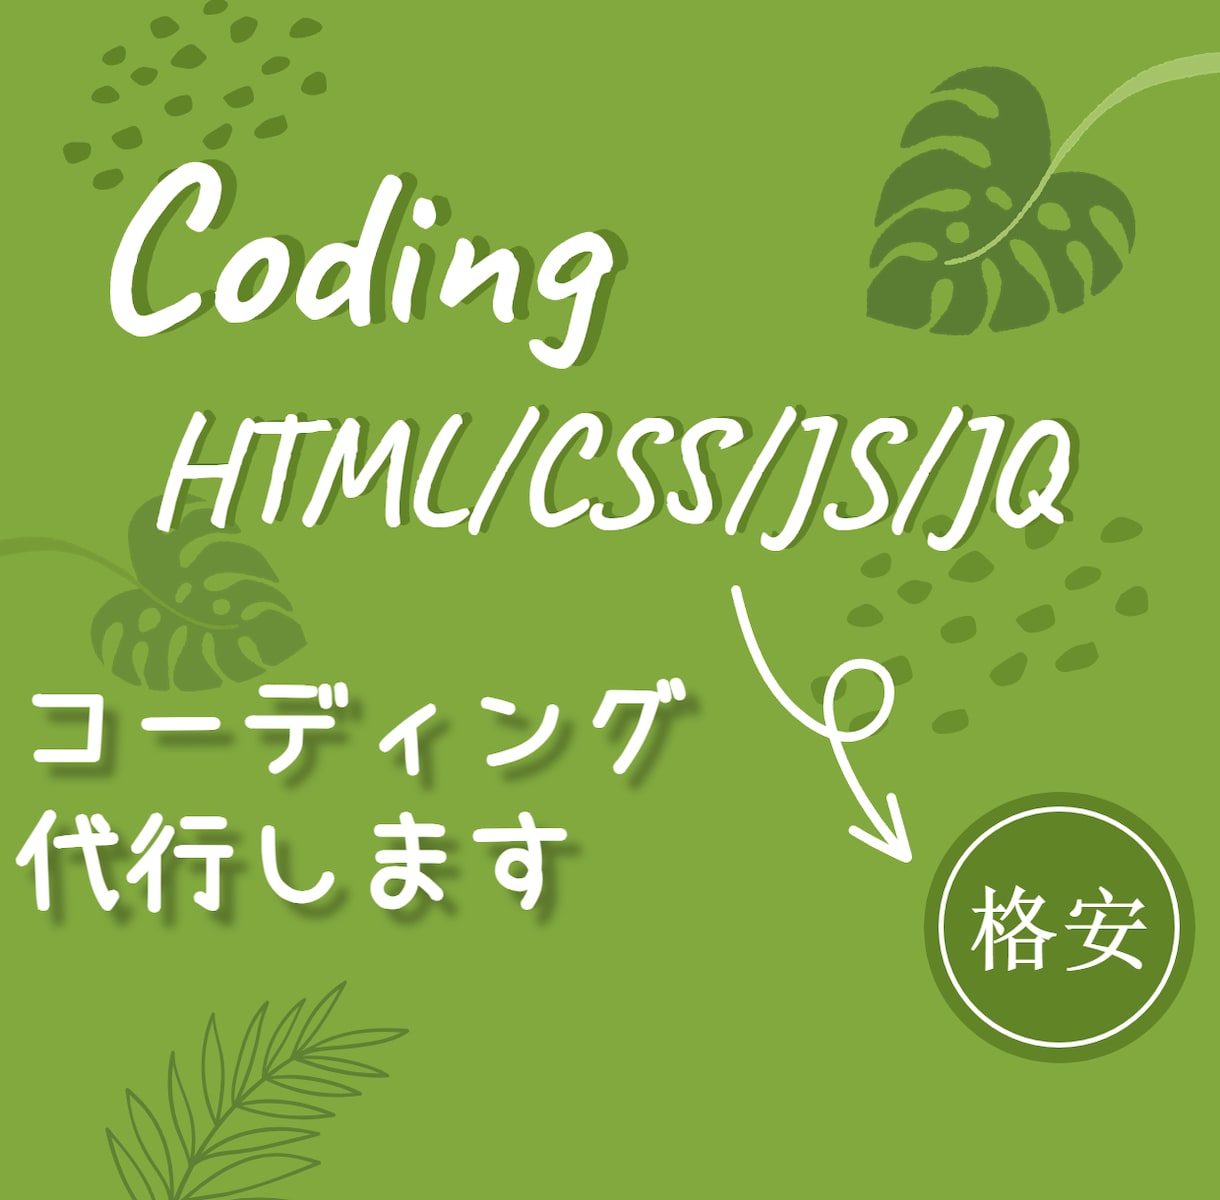 HTML・CSS・JS/JQコーディング代行します CMSを使わない静的サイト1万円から イメージ1